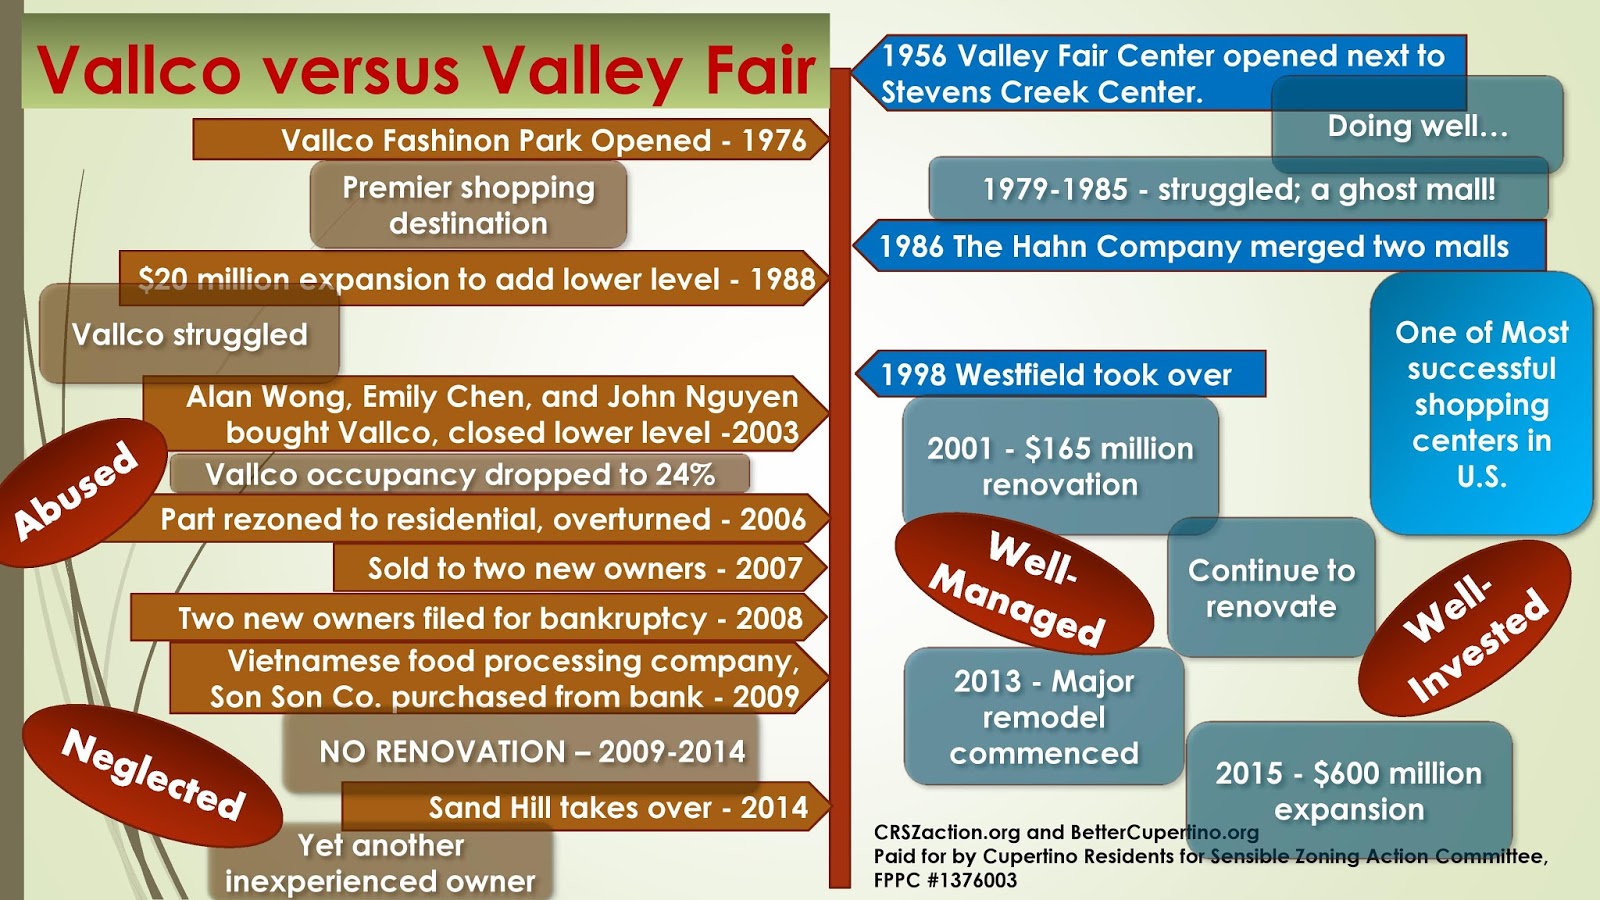 Westfield Valley Fair - Wikipedia